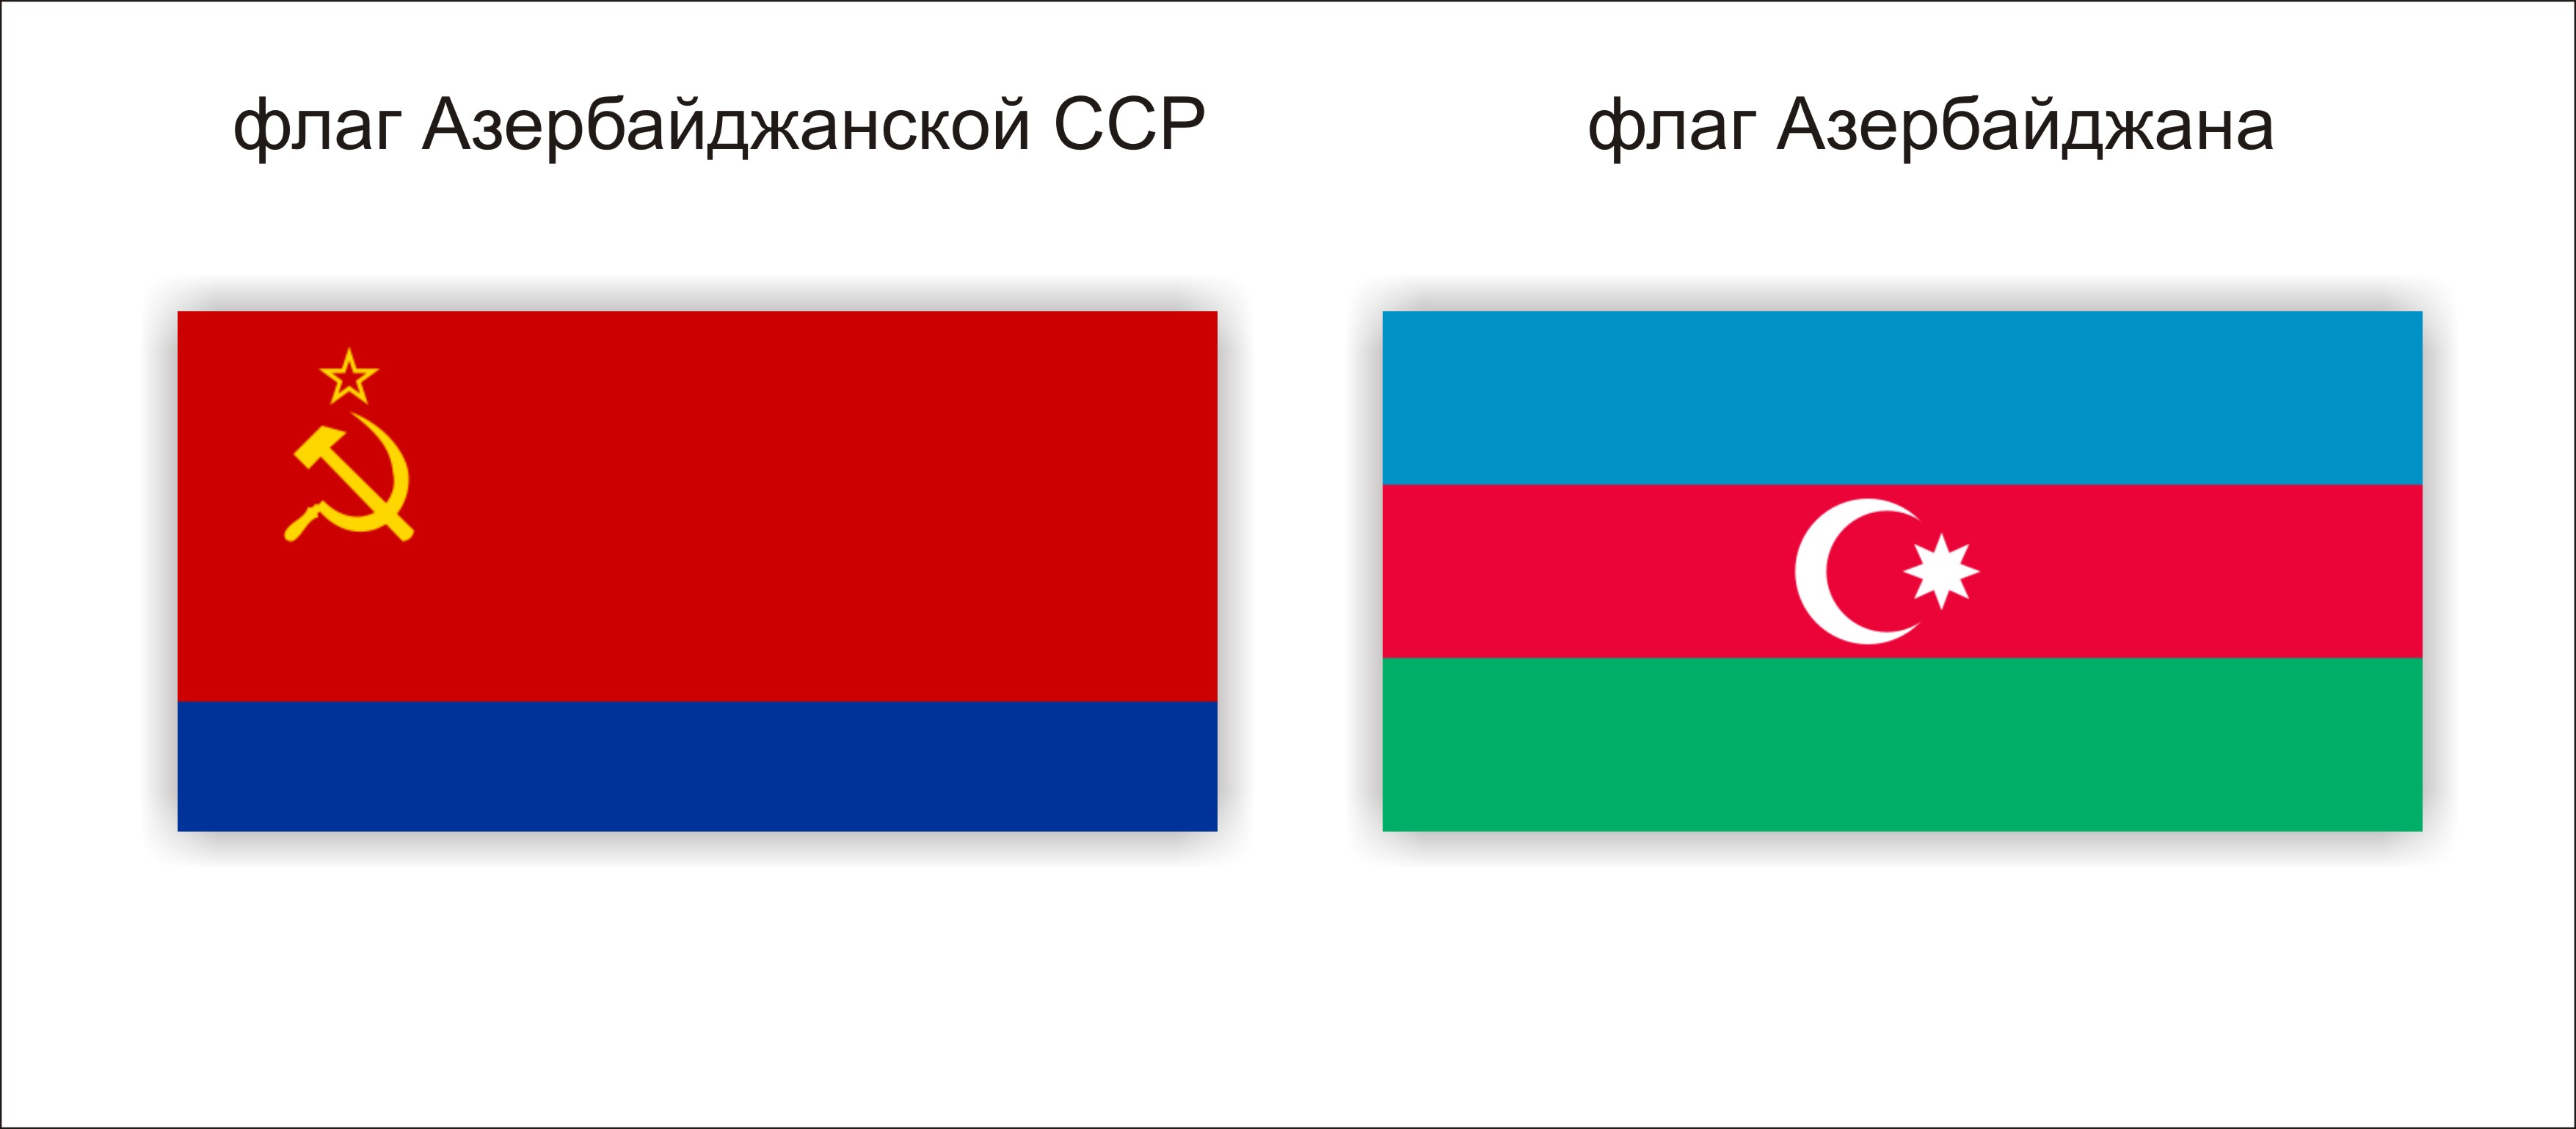 Азербайджанская Советская Социалистическая Республика (АЗССР)